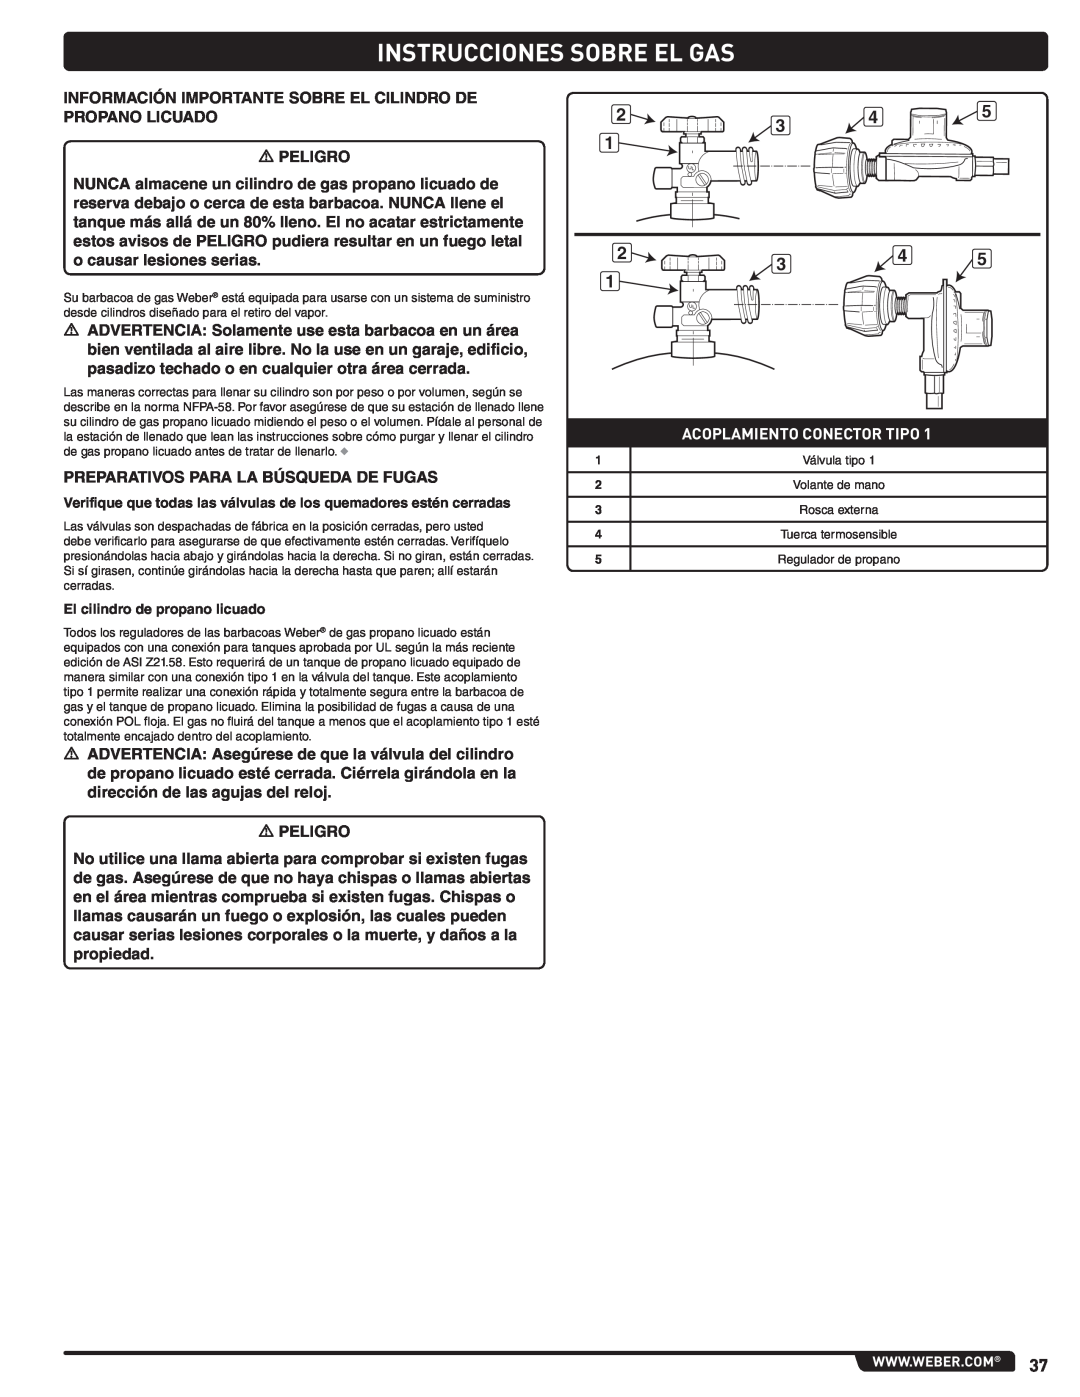 Summit 56214 manual Instrucciones Sobre El Gas, Acoplamiento Conector Tipo, El cilindro de propano licuado 